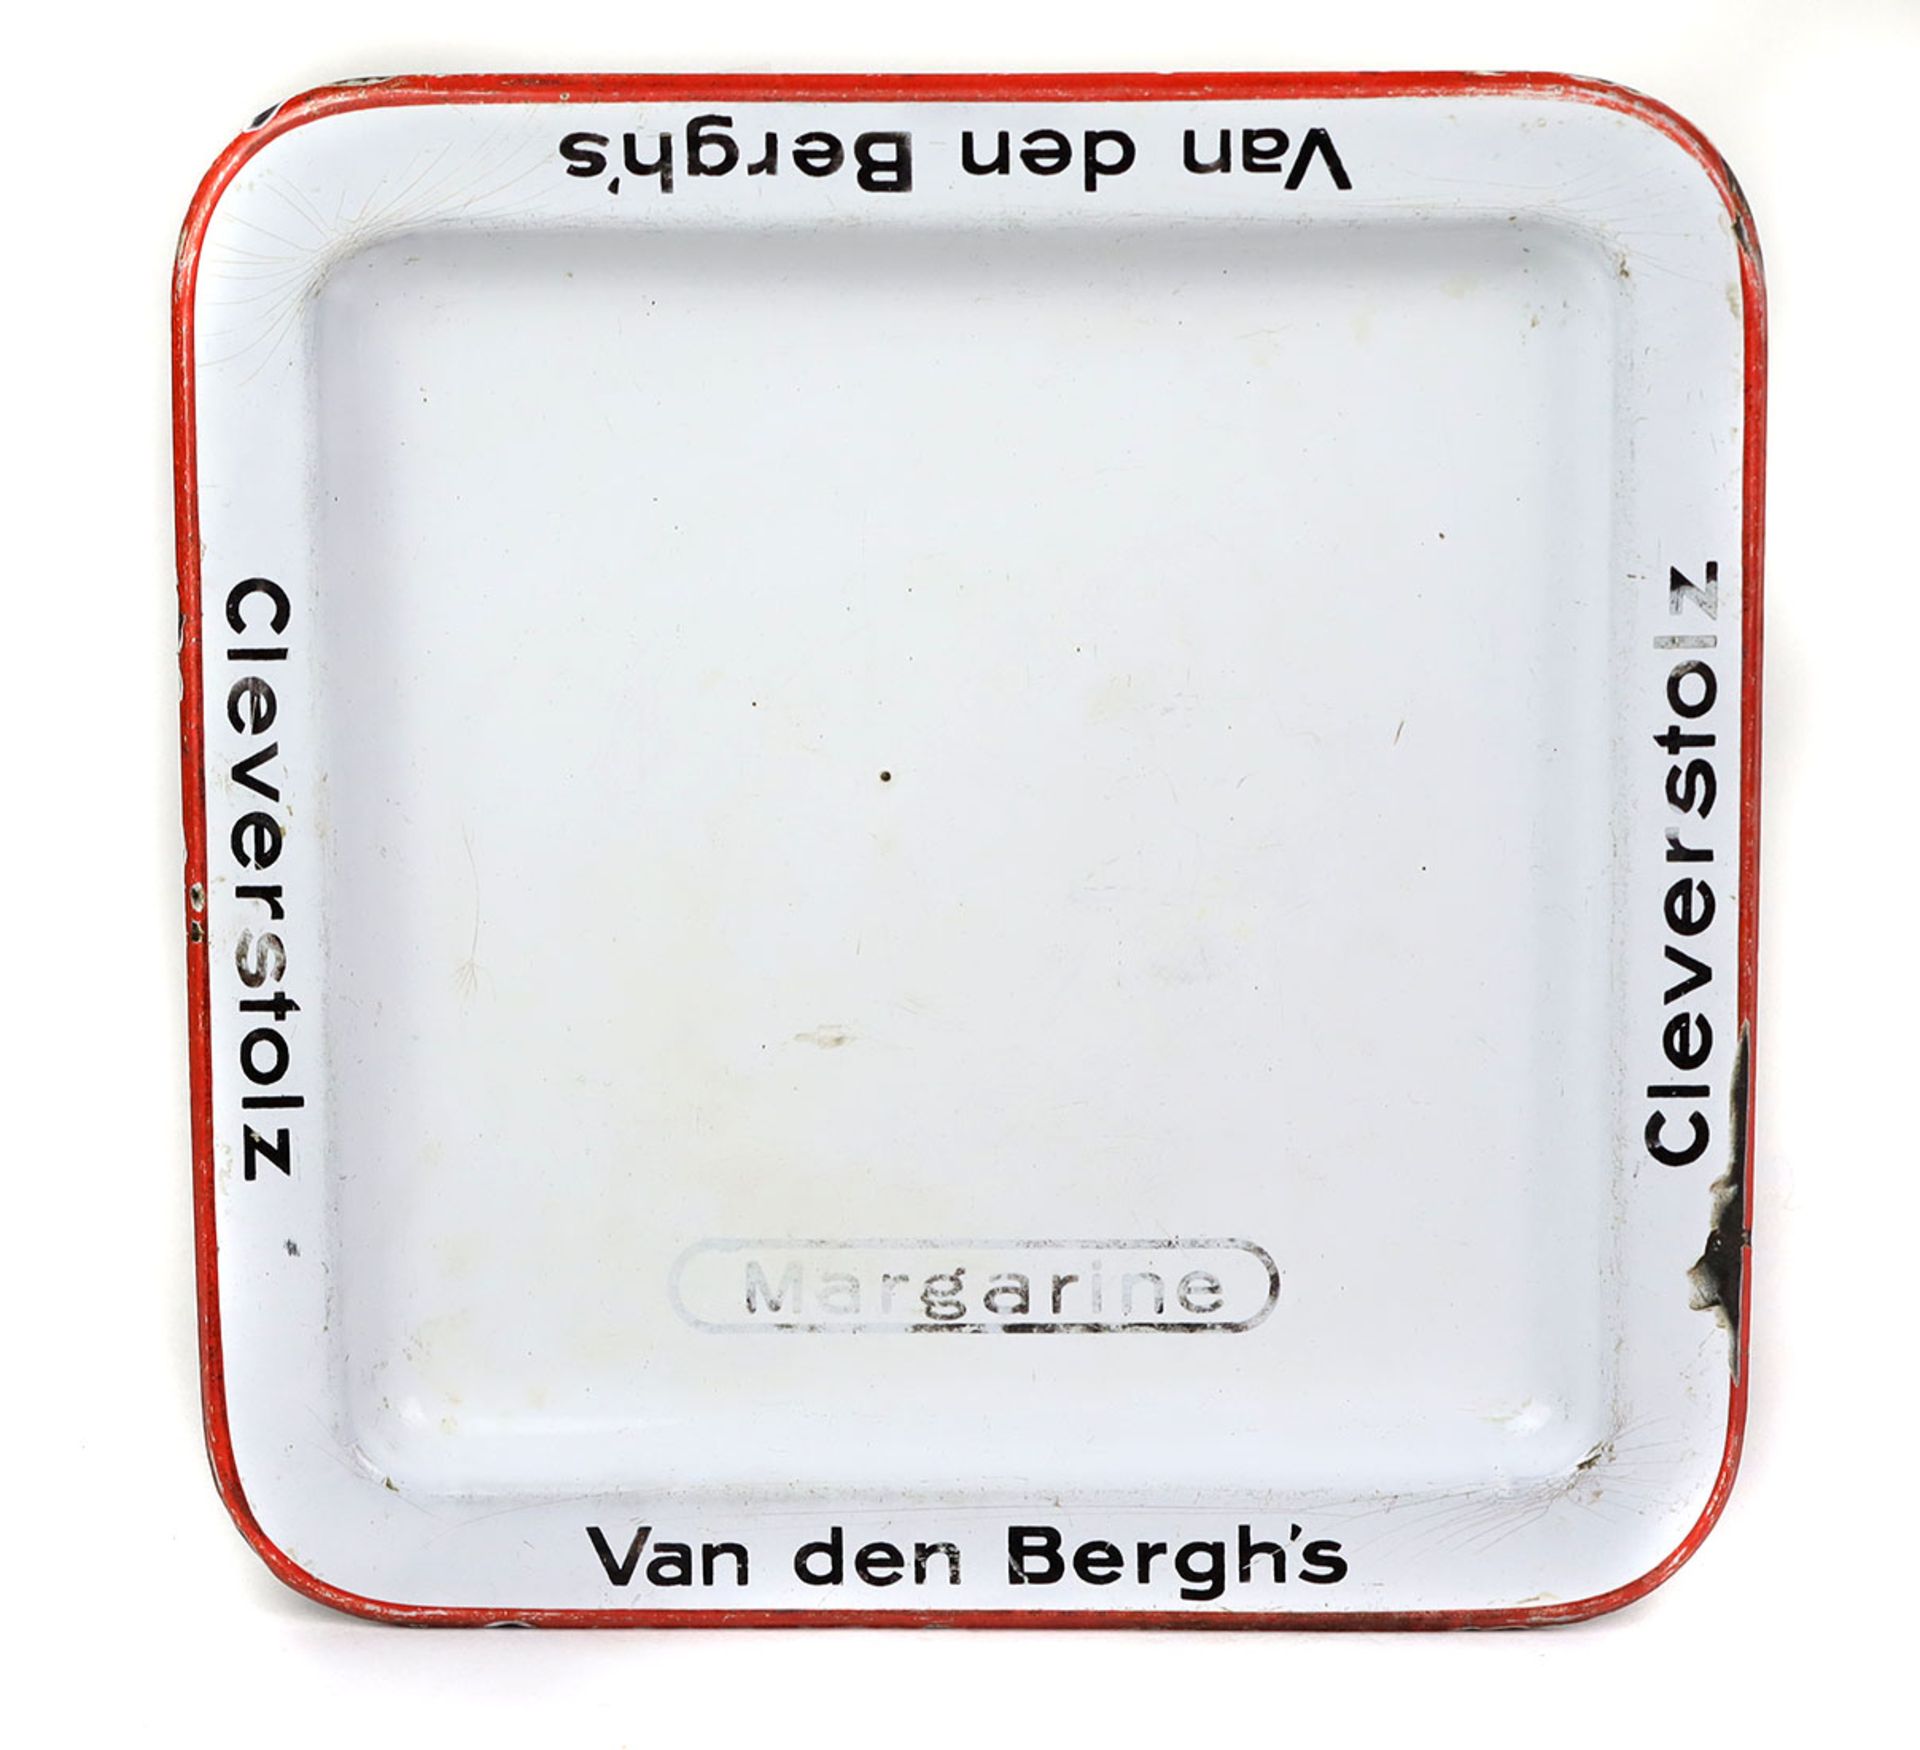 emailliertes Verkaufstablett*Margarine - Cleverstolz Van den Bergh's* in quadratischer Form mit